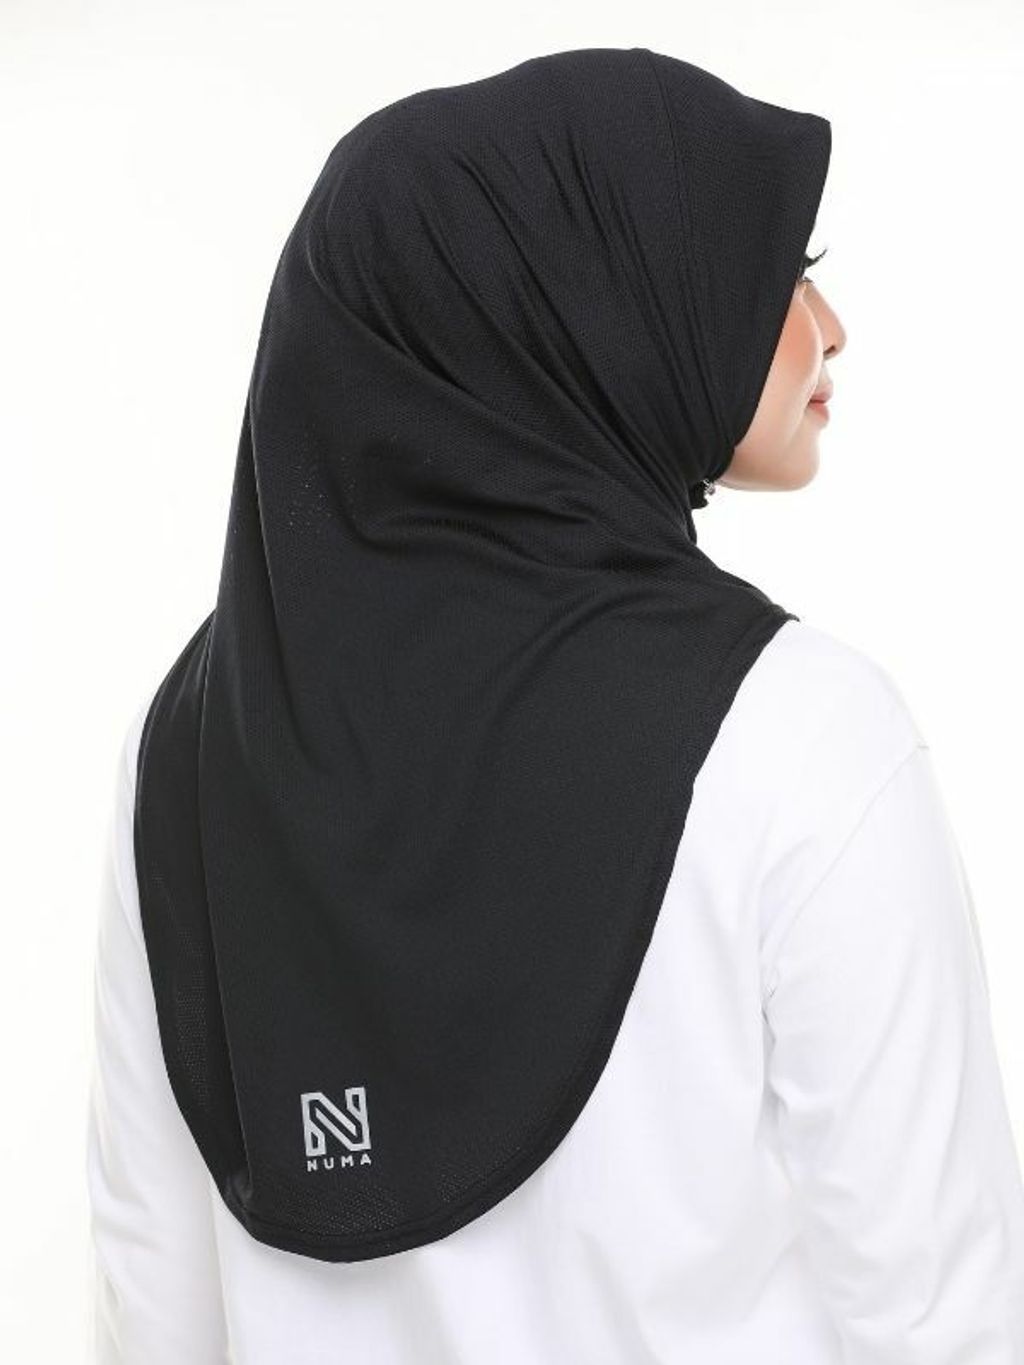 numa-sports-hijab-4.jpg